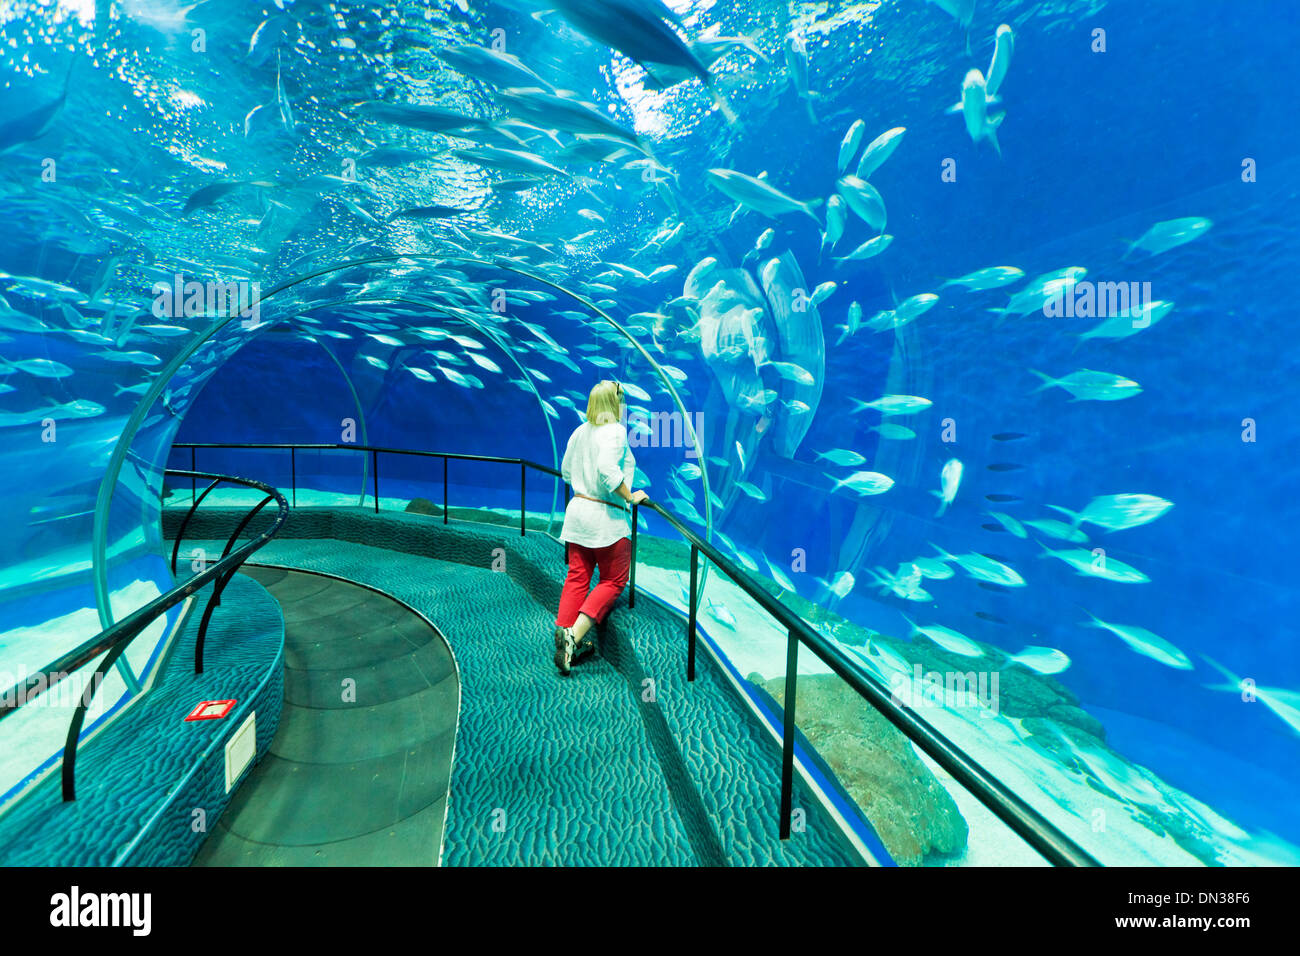 Woman à Shanghai ocean Aquarium, République populaire de Chine, République populaire de Chine, l'Asie Banque D'Images